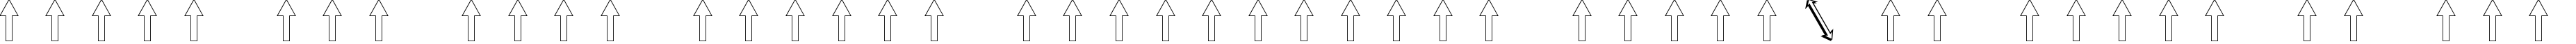 Пример написания шрифтом Arrows2 текста на русском